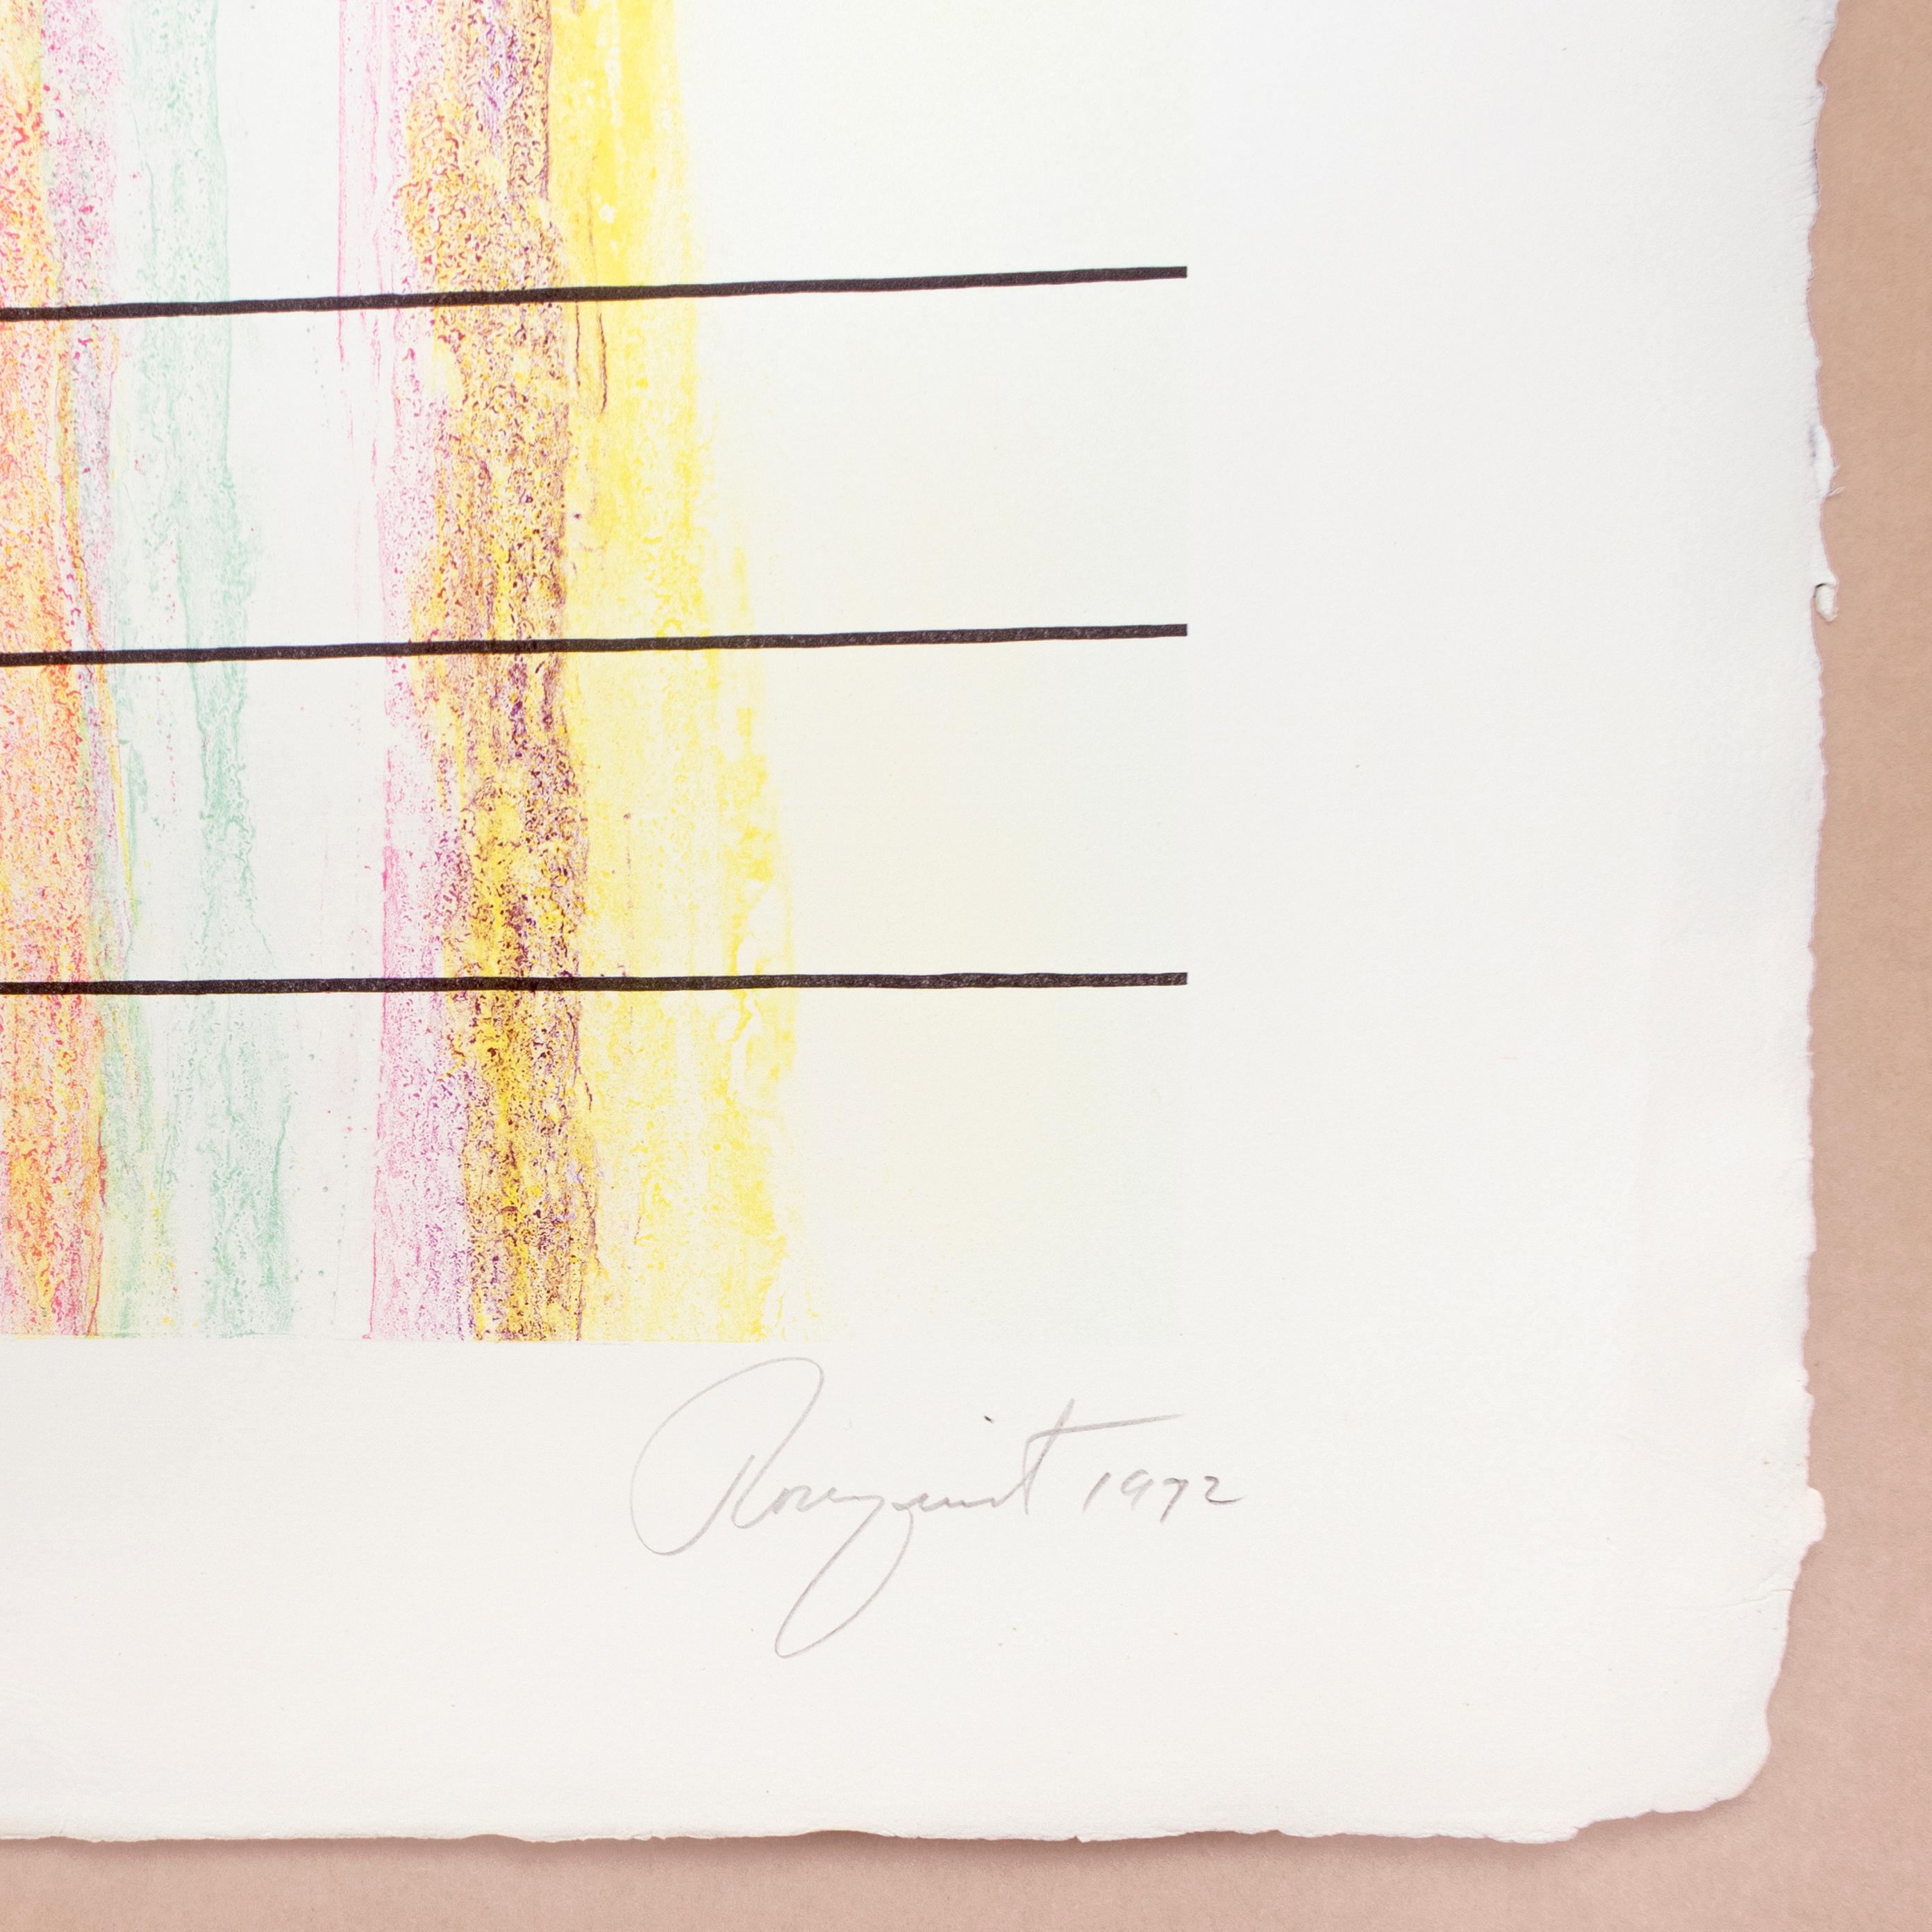 Eine klassische Rosenquist-Pop-Art-Komposition mit Gold, Türkis, Lila, Rosa, Blau, Grün und Gelb. Rainbow ist ein surreales und grafisches Werk, das kühne geometrische Formen mit malerischen Farbtupfern und Airbrush-Texturen verbindet. Rosenquists